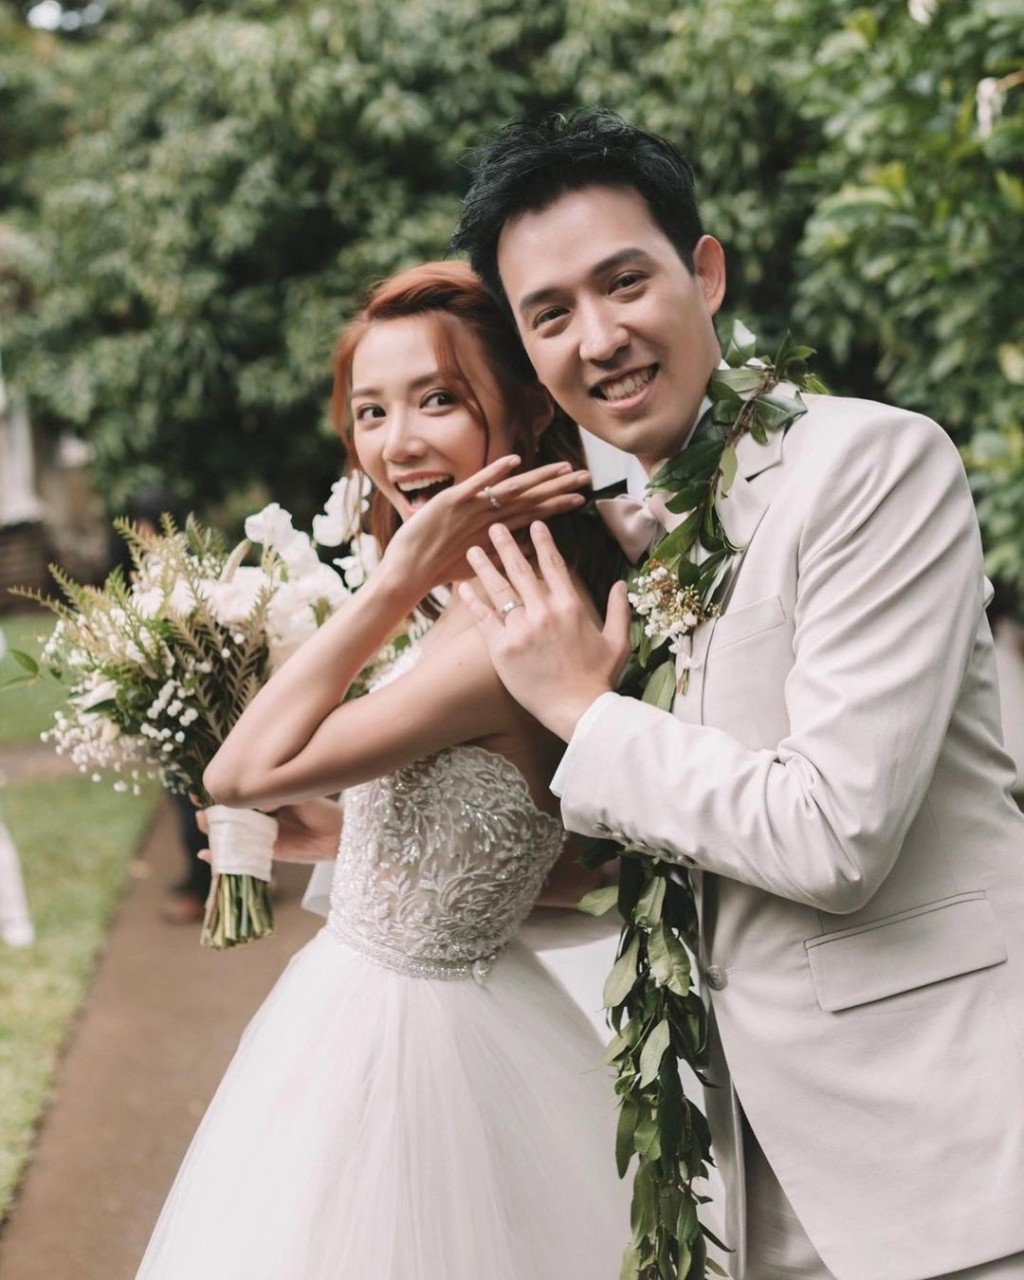 倪晨曦于2018年获金融才俊男友Vincent求婚成功。